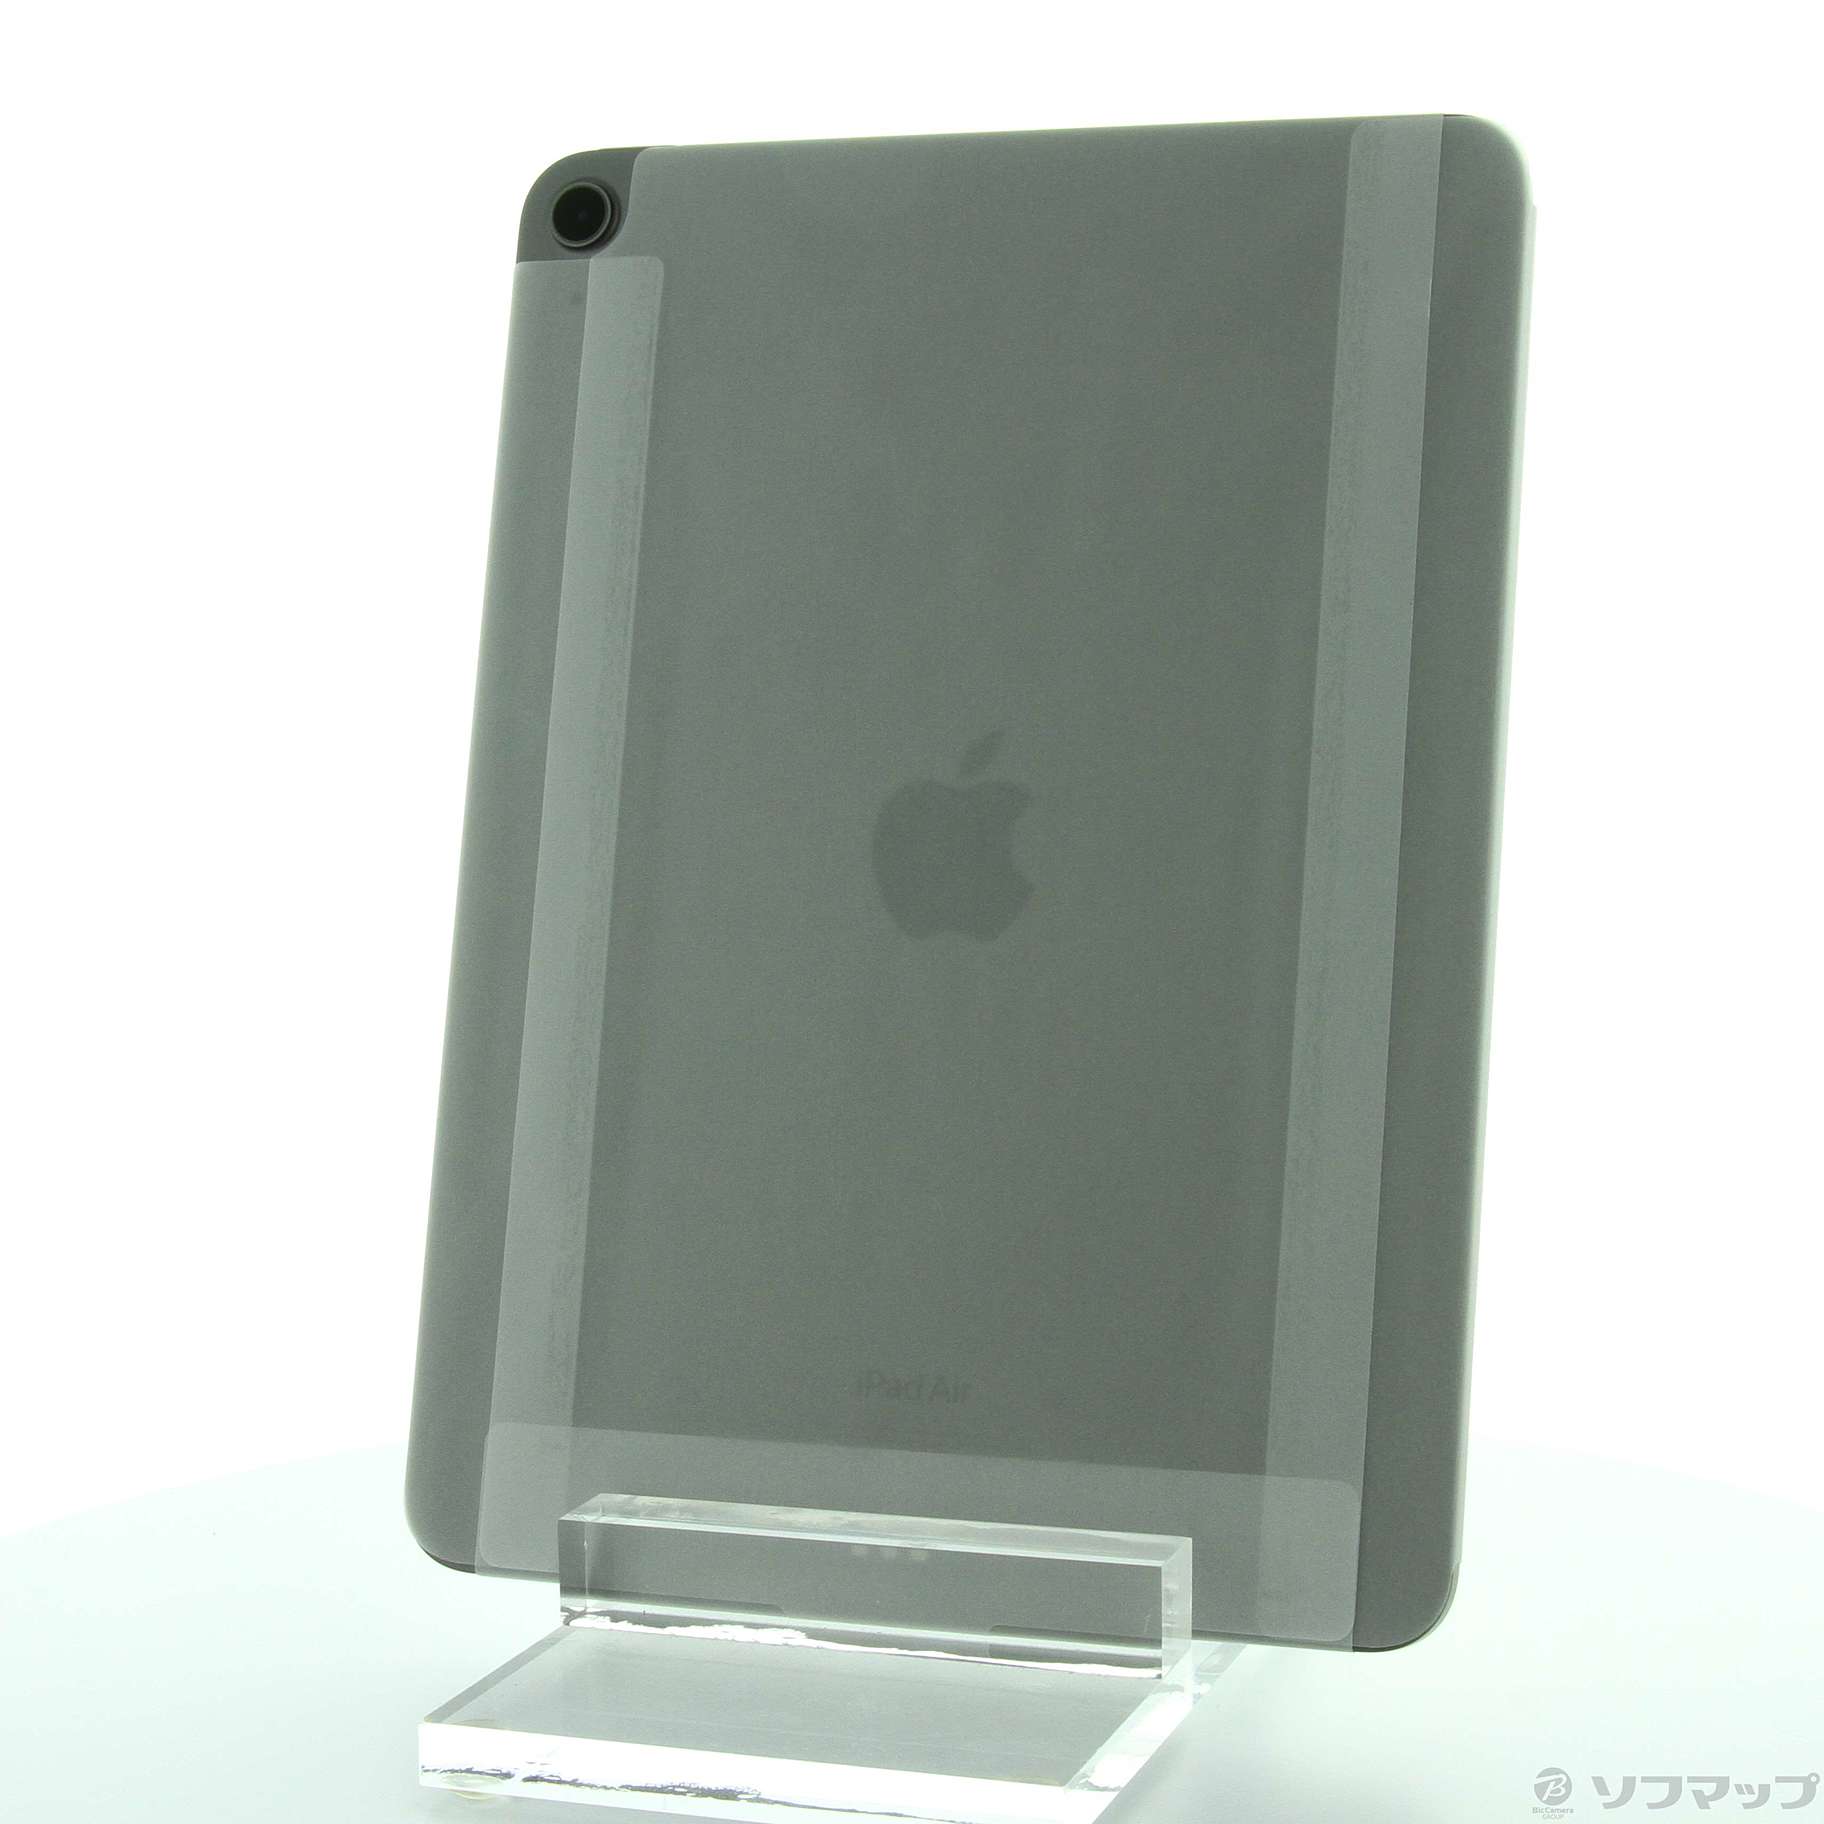 【極美品】iPadAir第5世代 256GB スペースグレイ